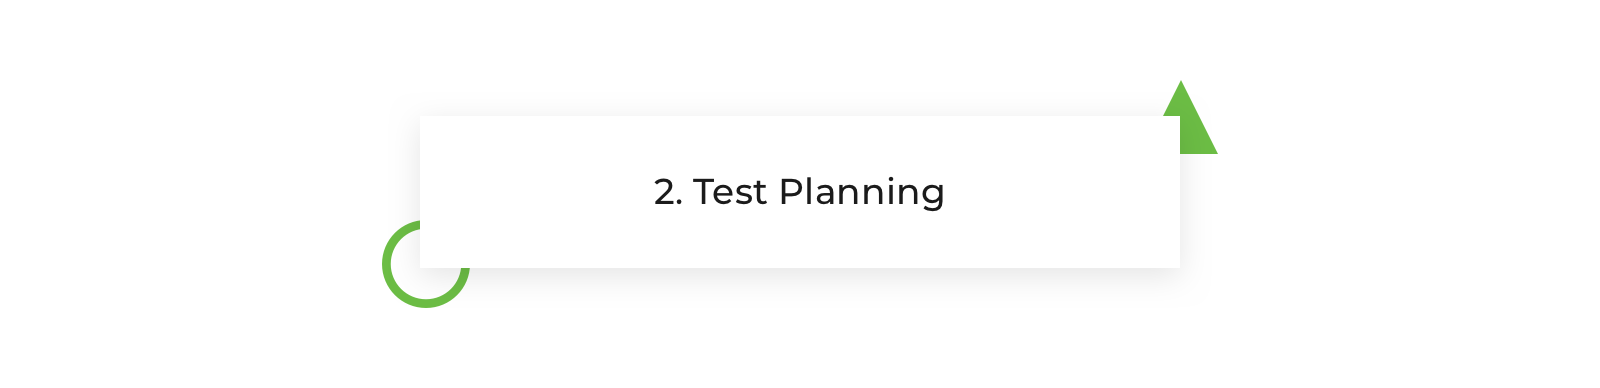 Test-Planning